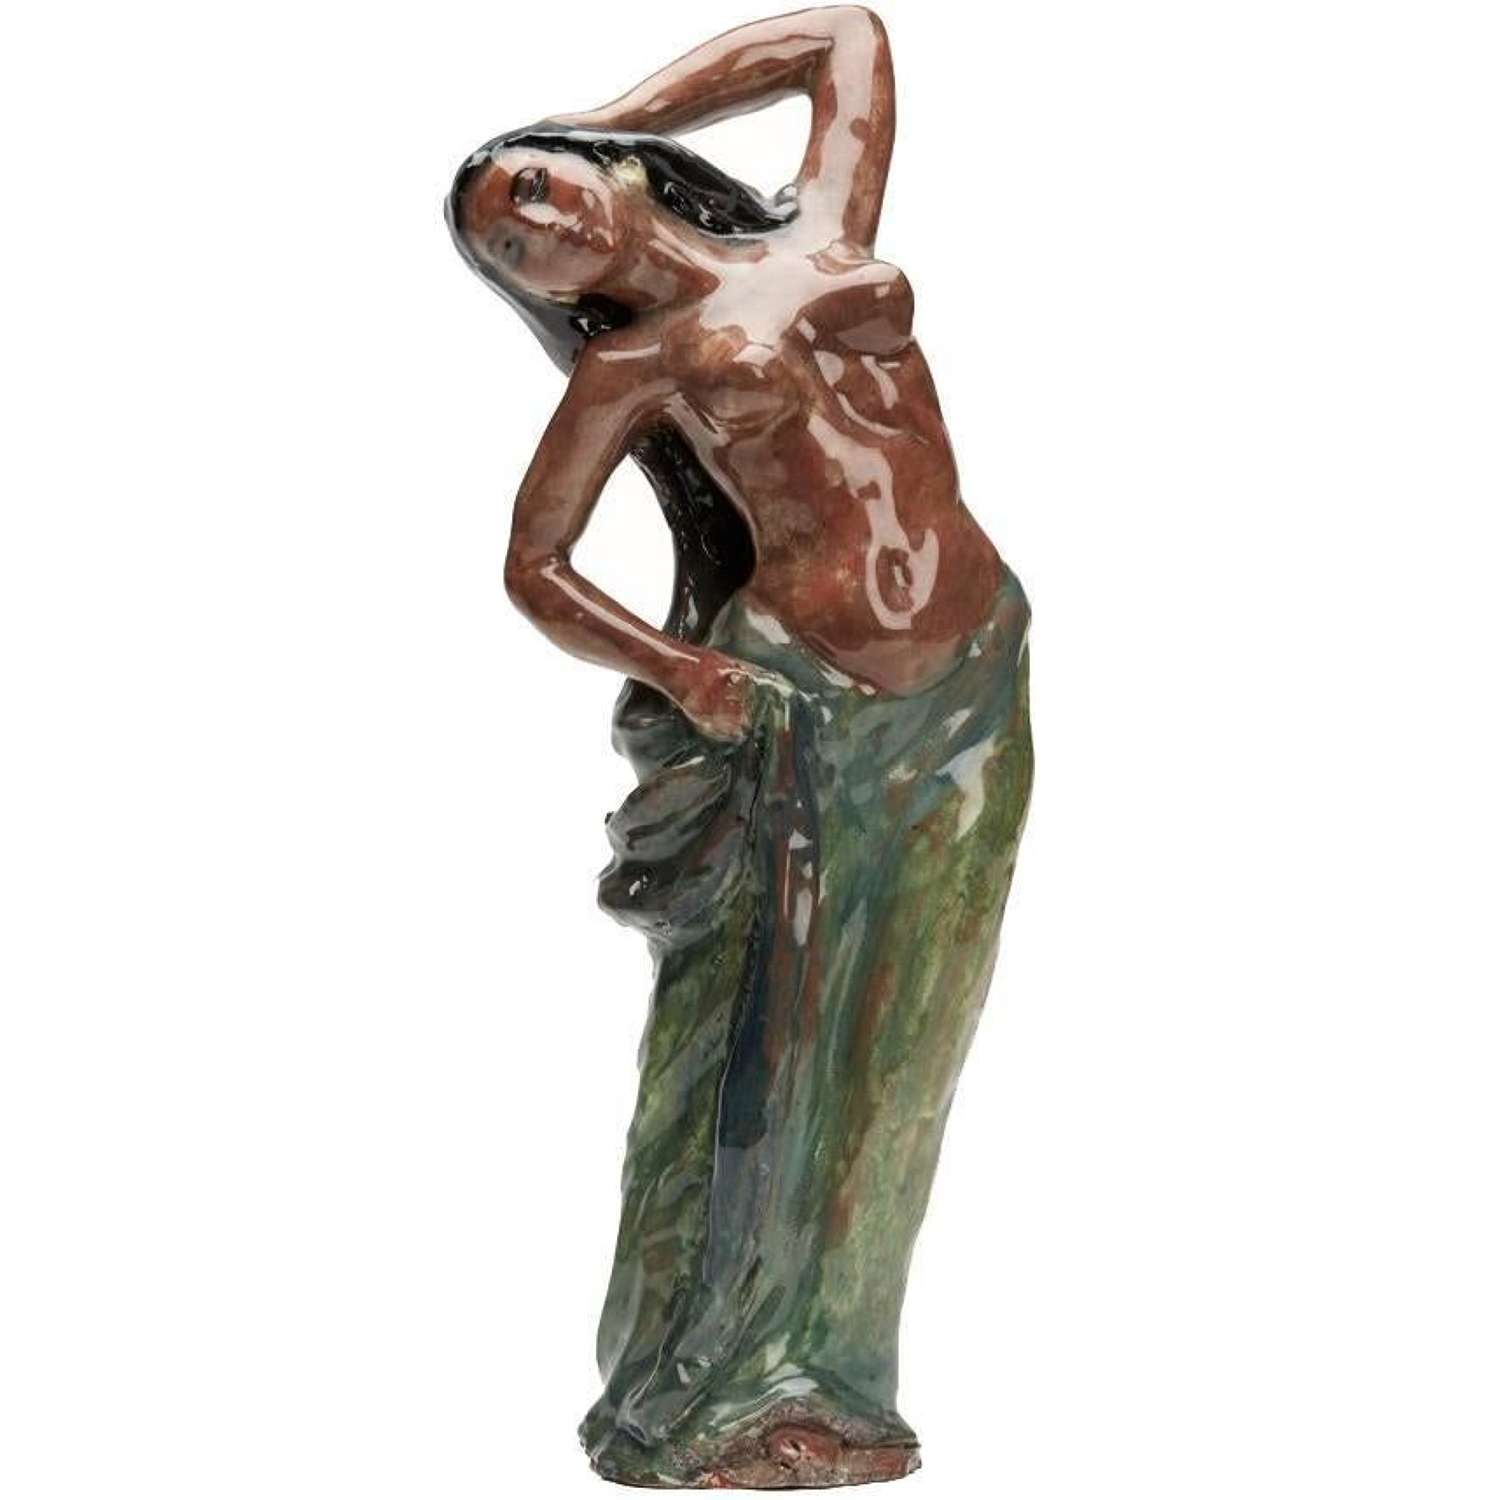 Wiener Werkstatte Austrian Art Pottery Dancer Figure, 20th C.